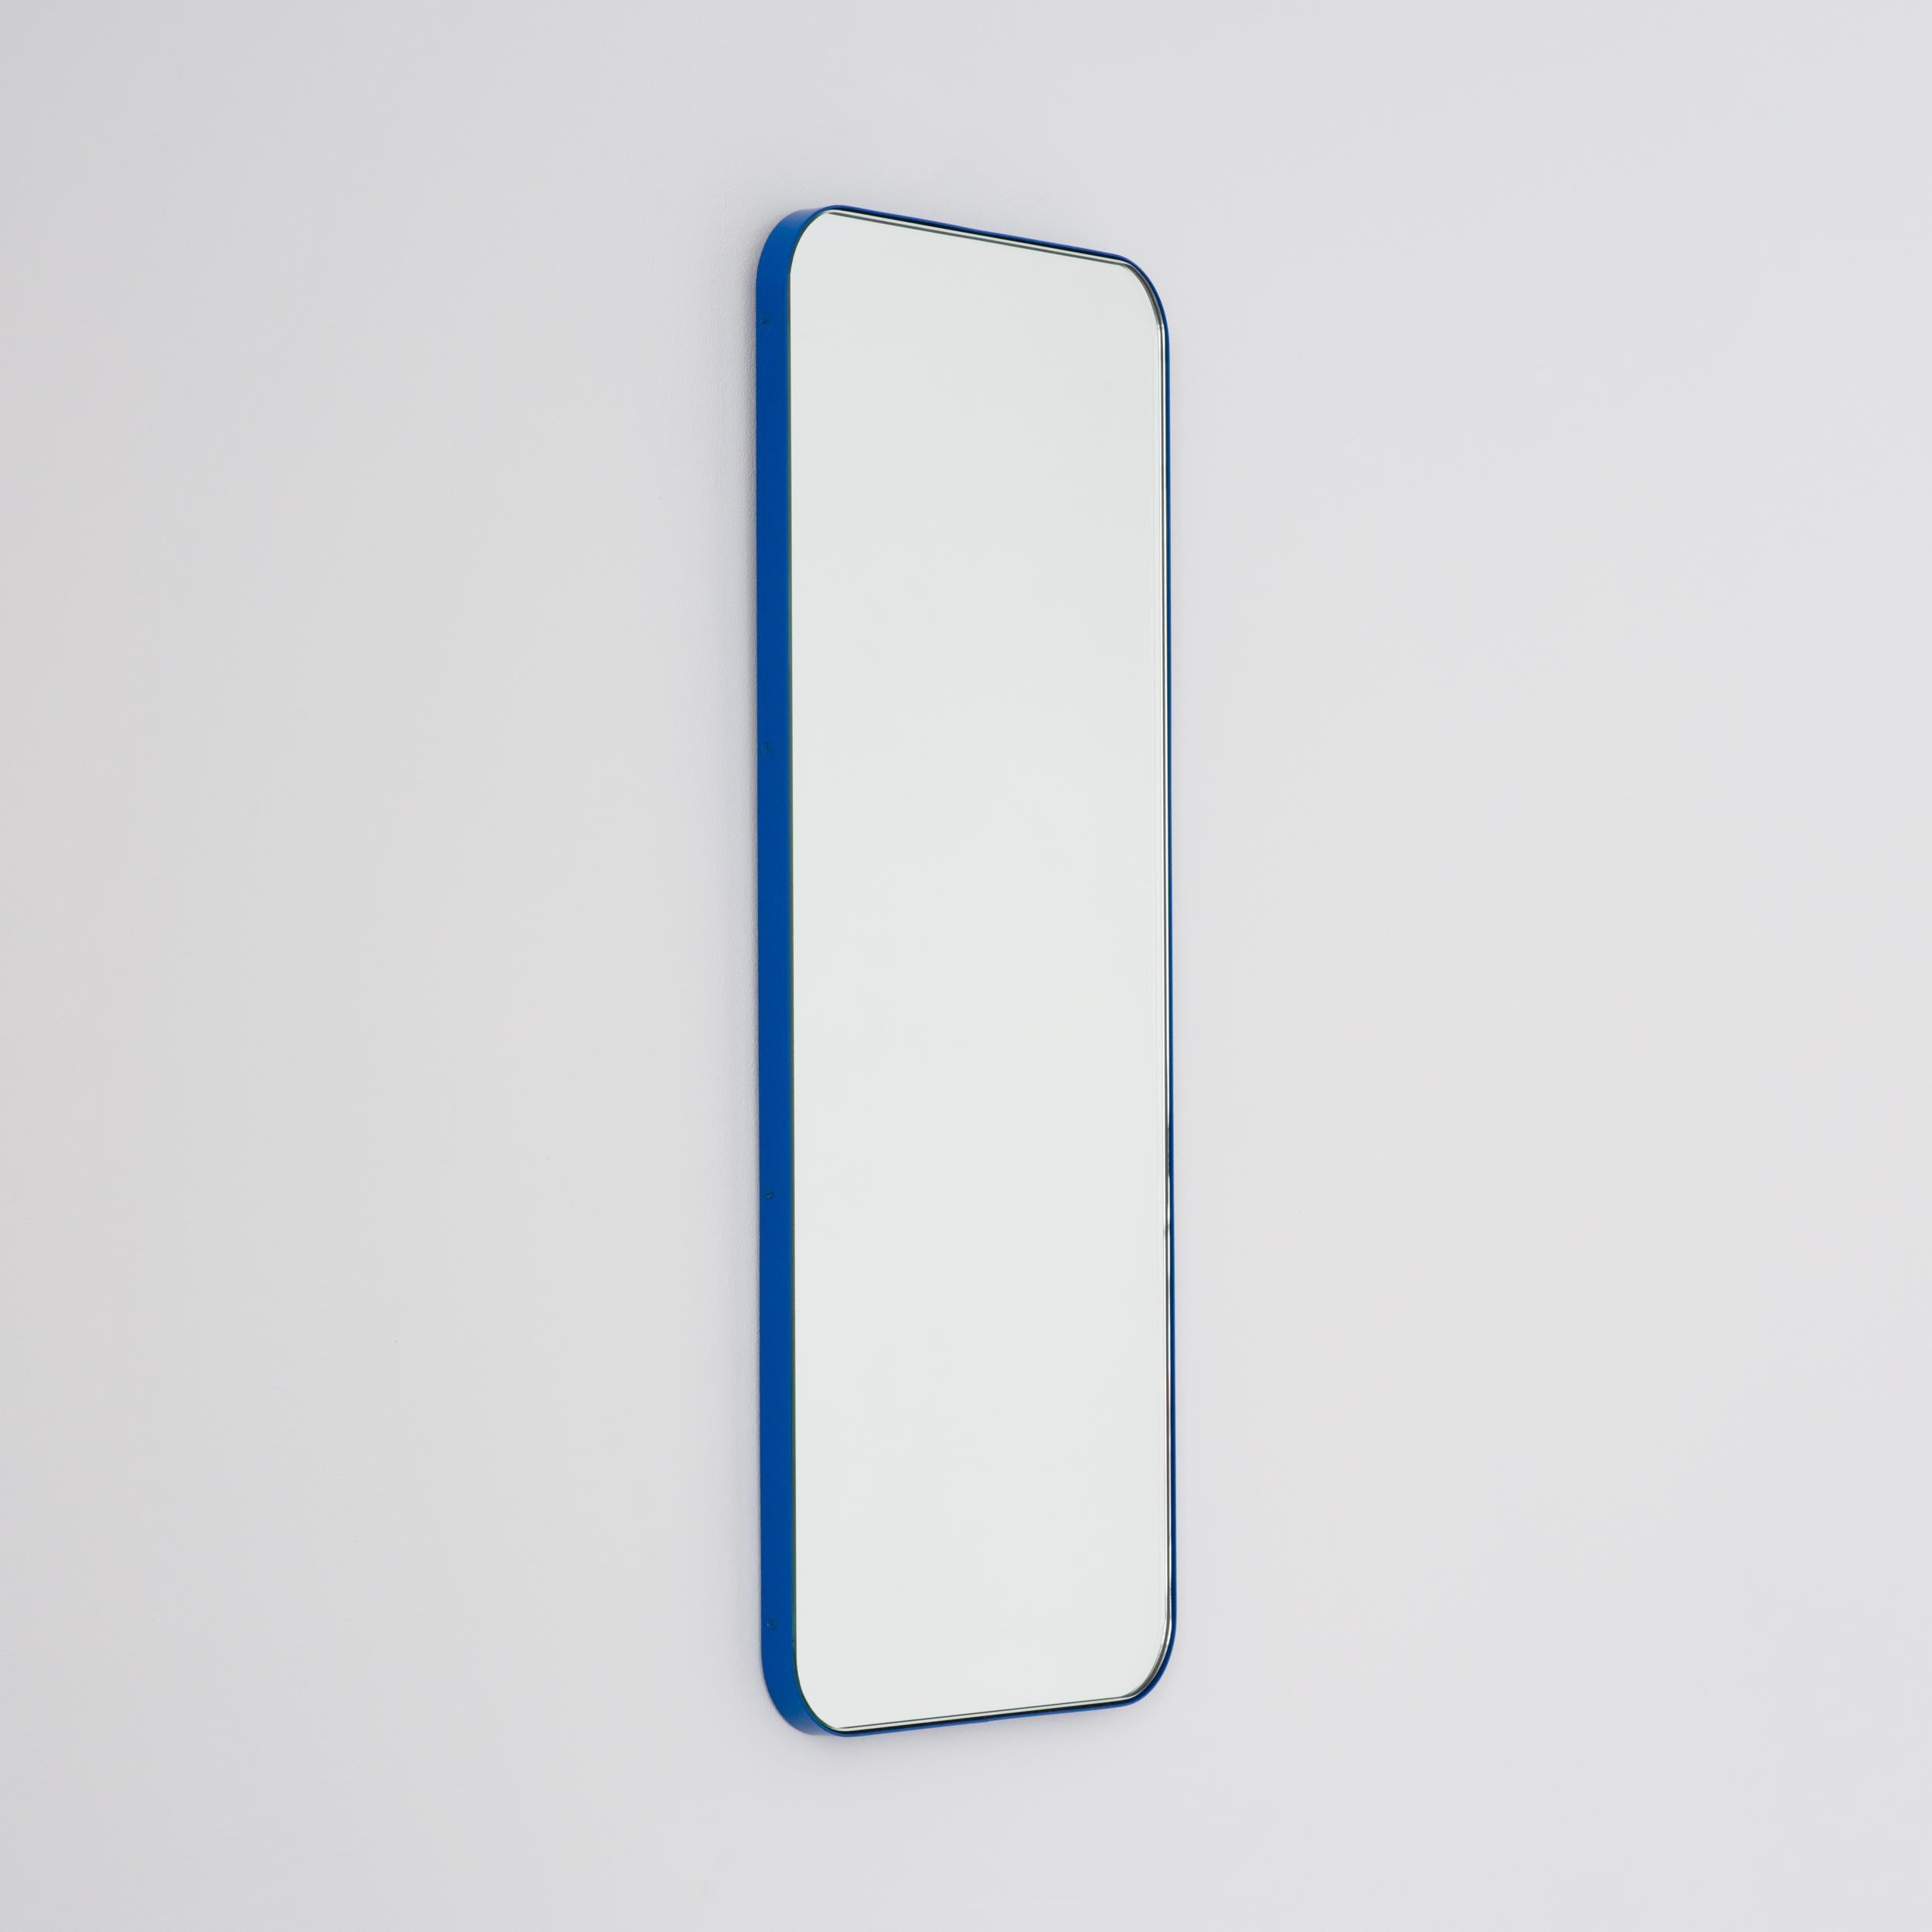 Moderner rechteckiger Spiegel mit einem eleganten blauen Rahmen. Teil der charmanten Quadris™ Kollektion, entworfen und handgefertigt in London, UK. 

Die Lieferung erfolgt mit einer speziellen Z-Stange für eine einfache Installation. Auf Anfrage